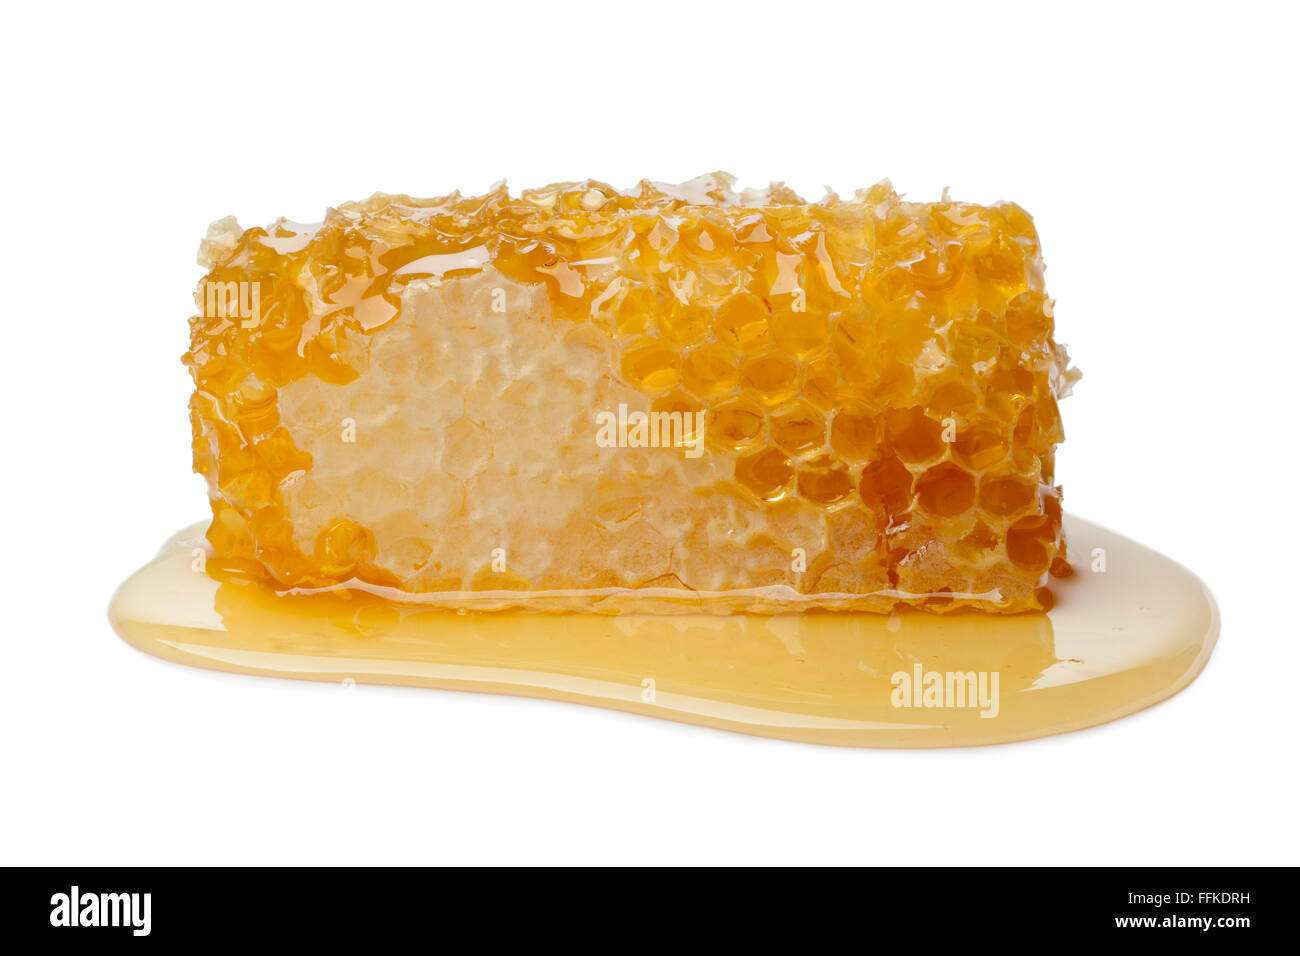 De miel et le miel sur fond blanc Banque D'Images